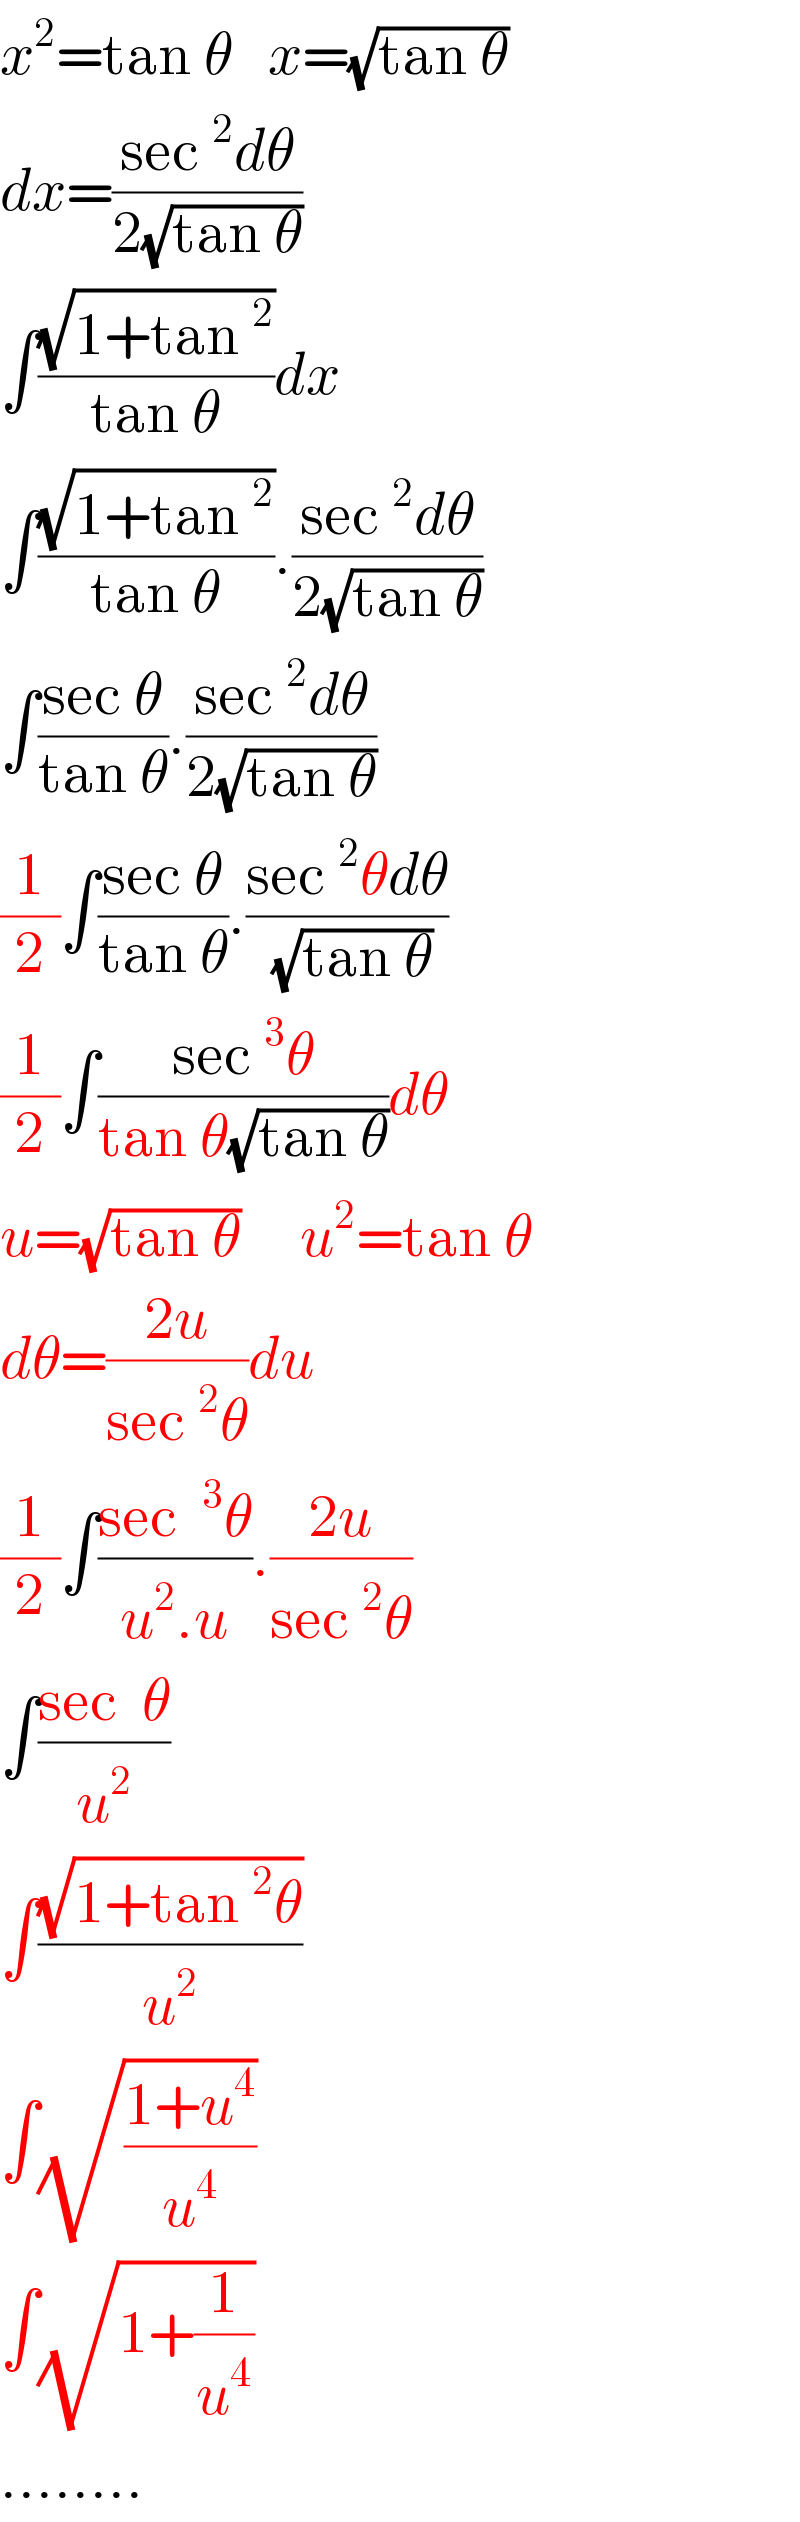 x^2 =tan θ   x=(√(tan θ))  dx=((sec^2 dθ)/(2(√(tan θ))))  ∫((√(1+tan^2 ))/(tan θ))dx  ∫((√(1+tan^2 ))/(tan θ)).((sec^2 dθ)/(2(√(tan θ))))  ∫((sec θ)/(tan θ)).((sec^2 dθ)/(2(√(tan θ))))  (1/2)∫((sec θ)/(tan θ)).((sec^2 θdθ)/(√(tan θ)))  (1/2)∫((sec^3 θ)/(tan θ(√(tan θ))))dθ  u=(√(tan θ))     u^2 =tan θ  dθ=((2u)/(sec^2 θ))du  (1/2)∫((sec ^3 θ)/(u^2 .u)).((2u)/(sec^2 θ))  ∫((sec  θ)/u^2 )  ∫((√(1+tan^2 θ))/u^2 )  ∫(√((1+u^4 )/u^4 ))  ∫(√(1+(1/u^4 )))  ........  